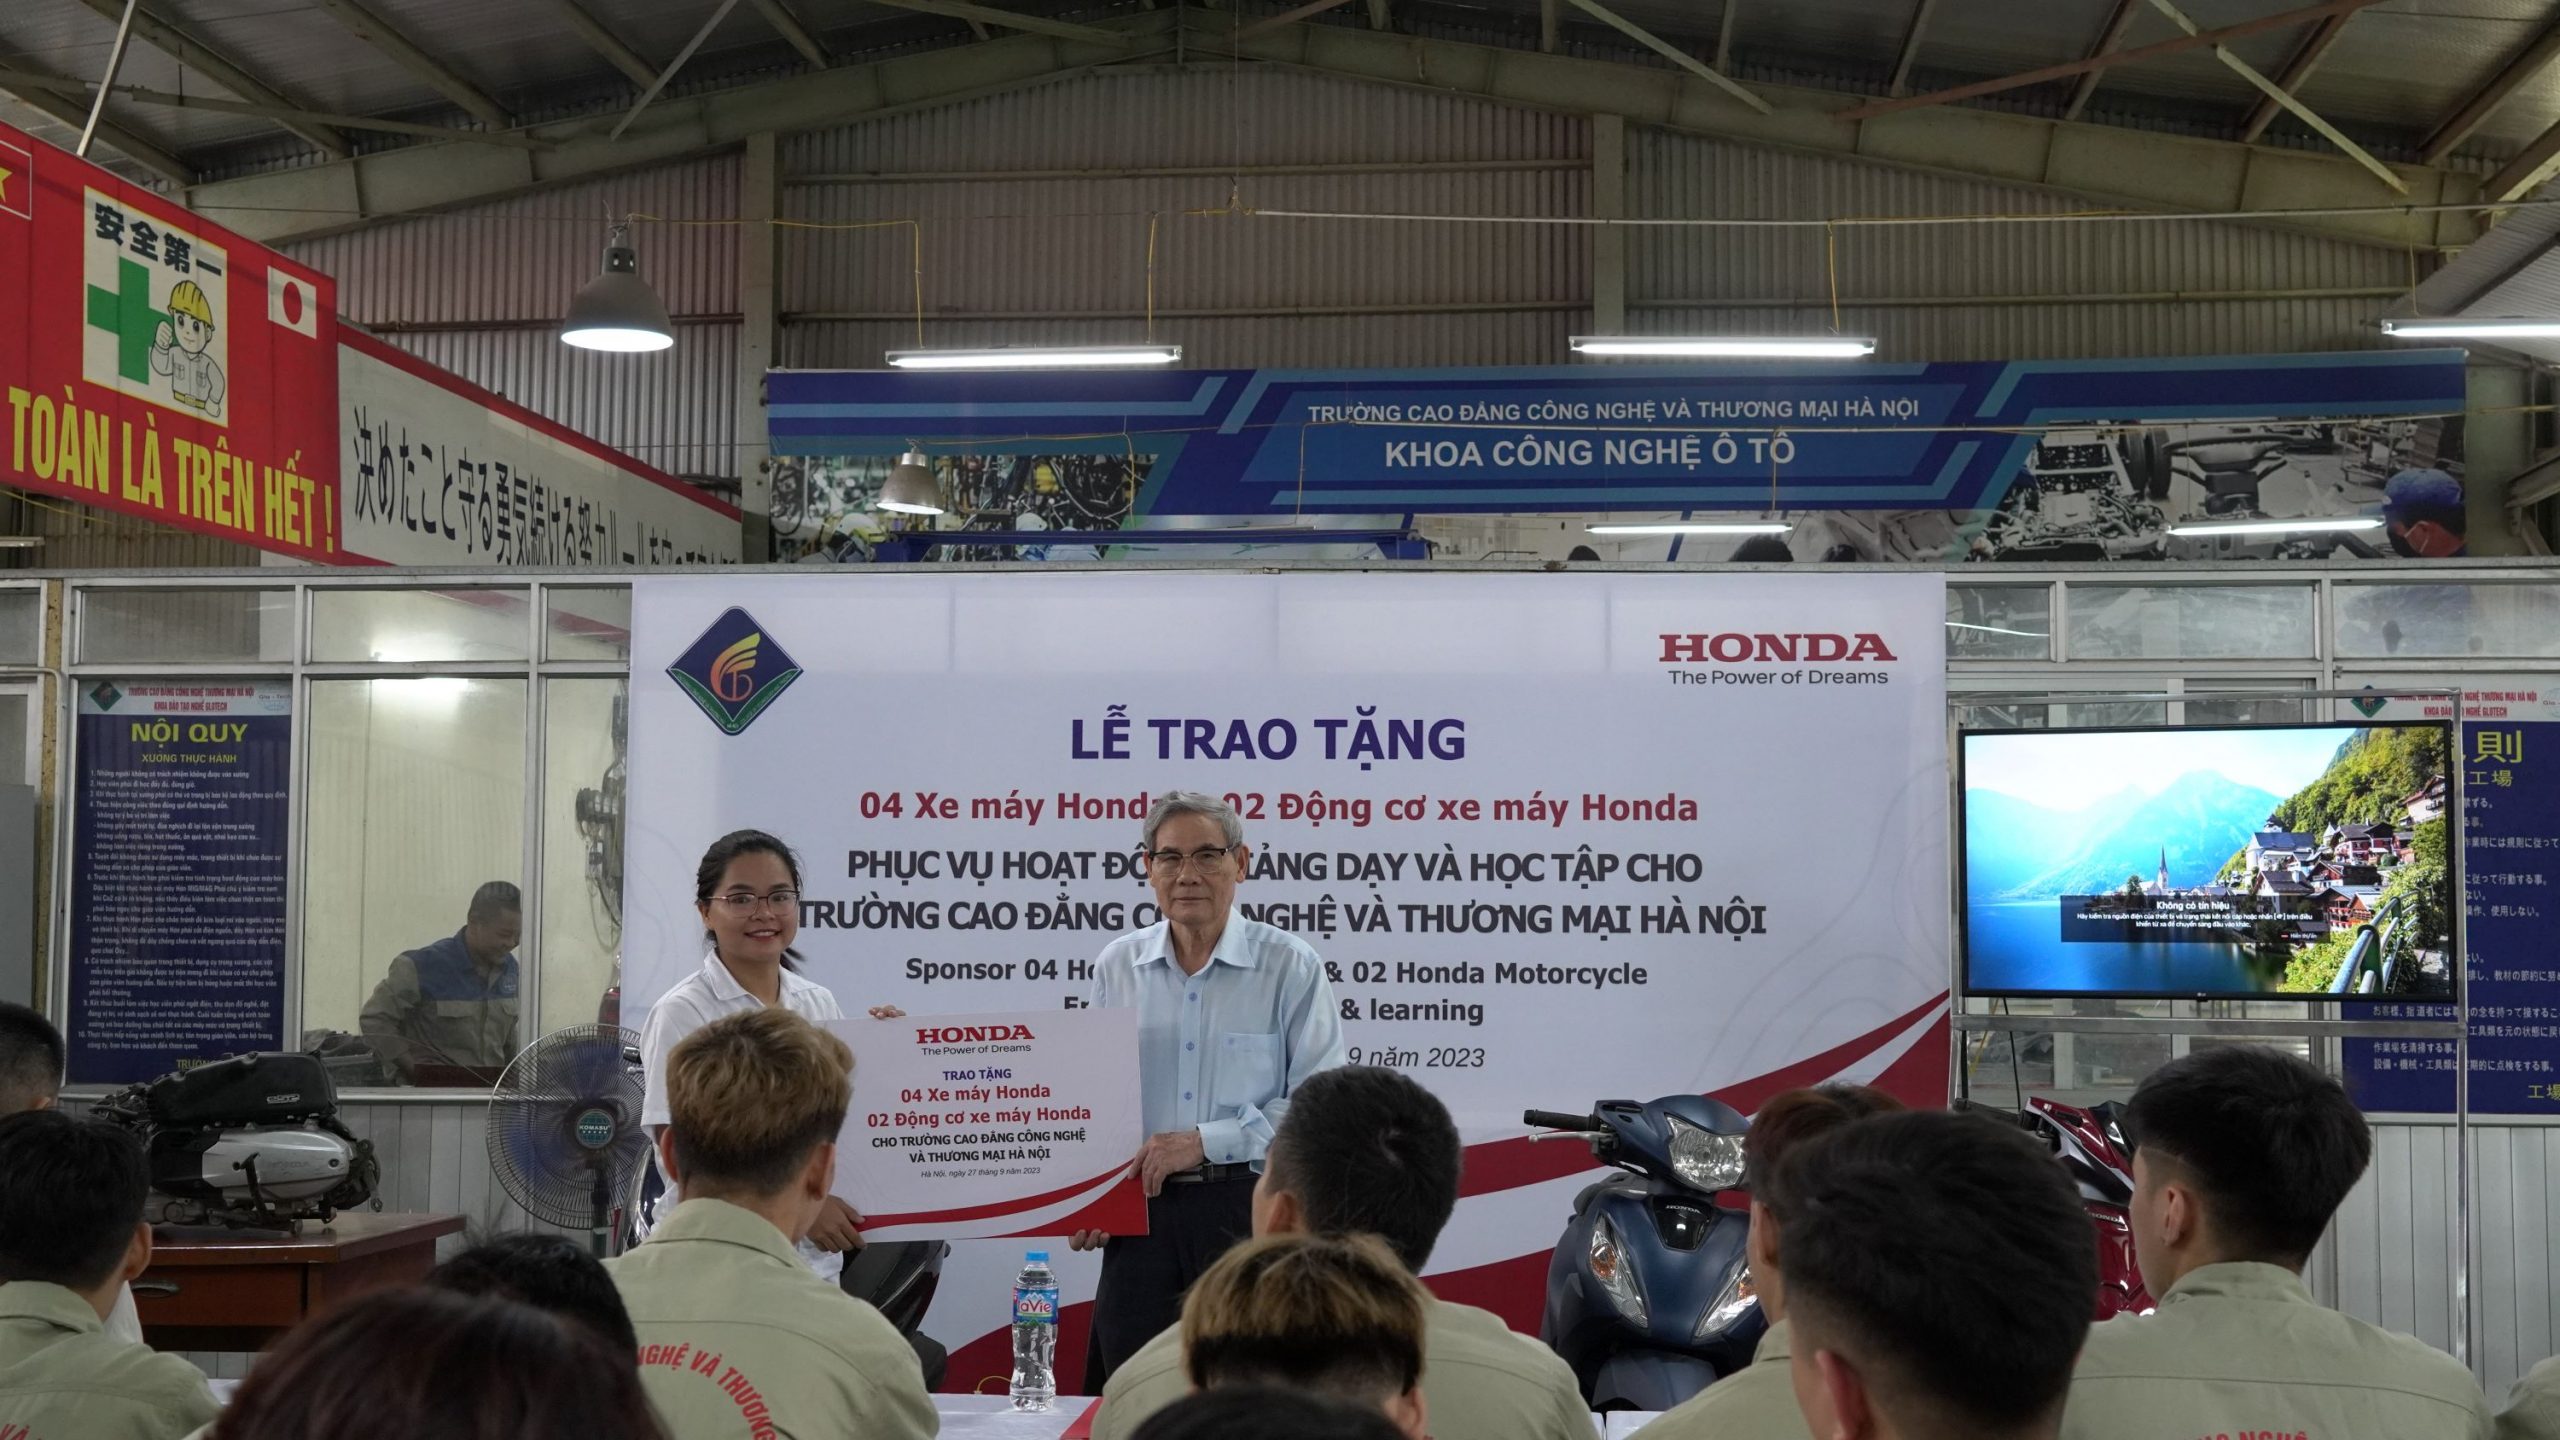 Honda Việt Nam trao tặng 4 xe máy Honda và 2 động cơ xe máy Honda cho chơi bài tiến lên miền nam
